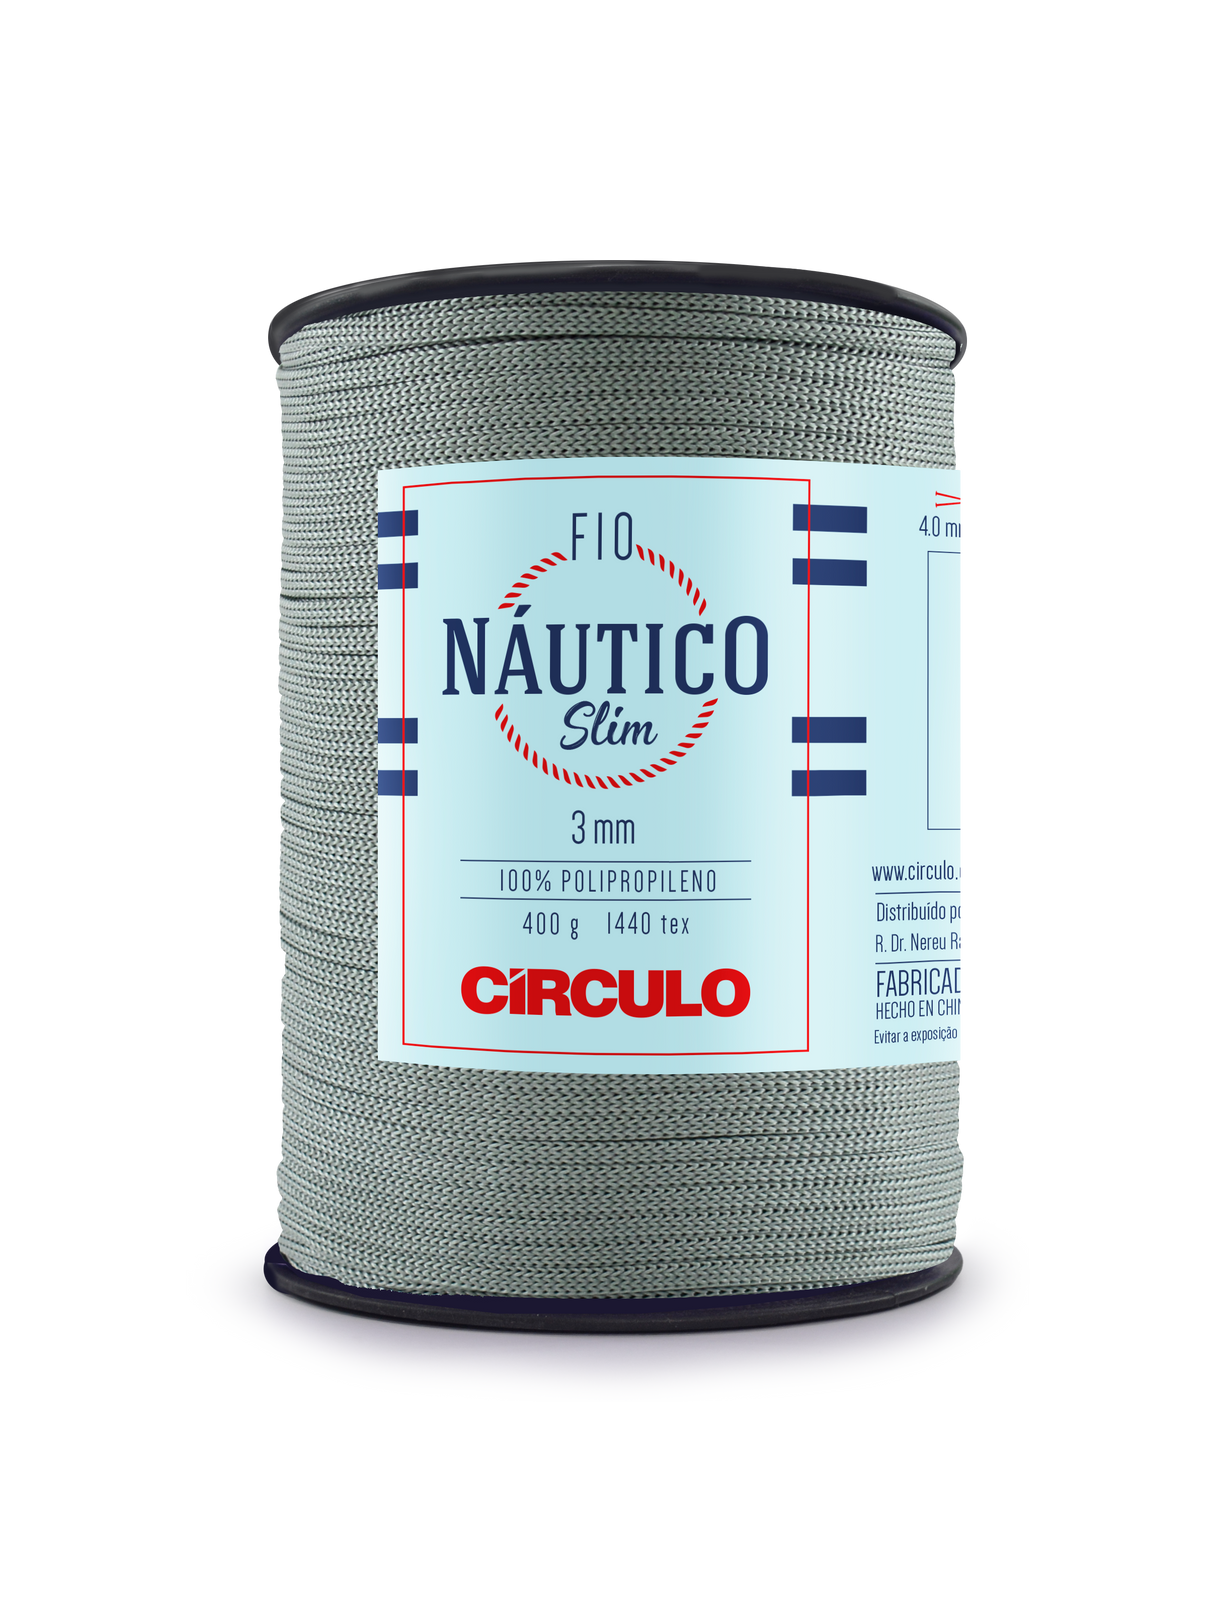 Circulo Fio Nautico Slim 3 mm color 8214